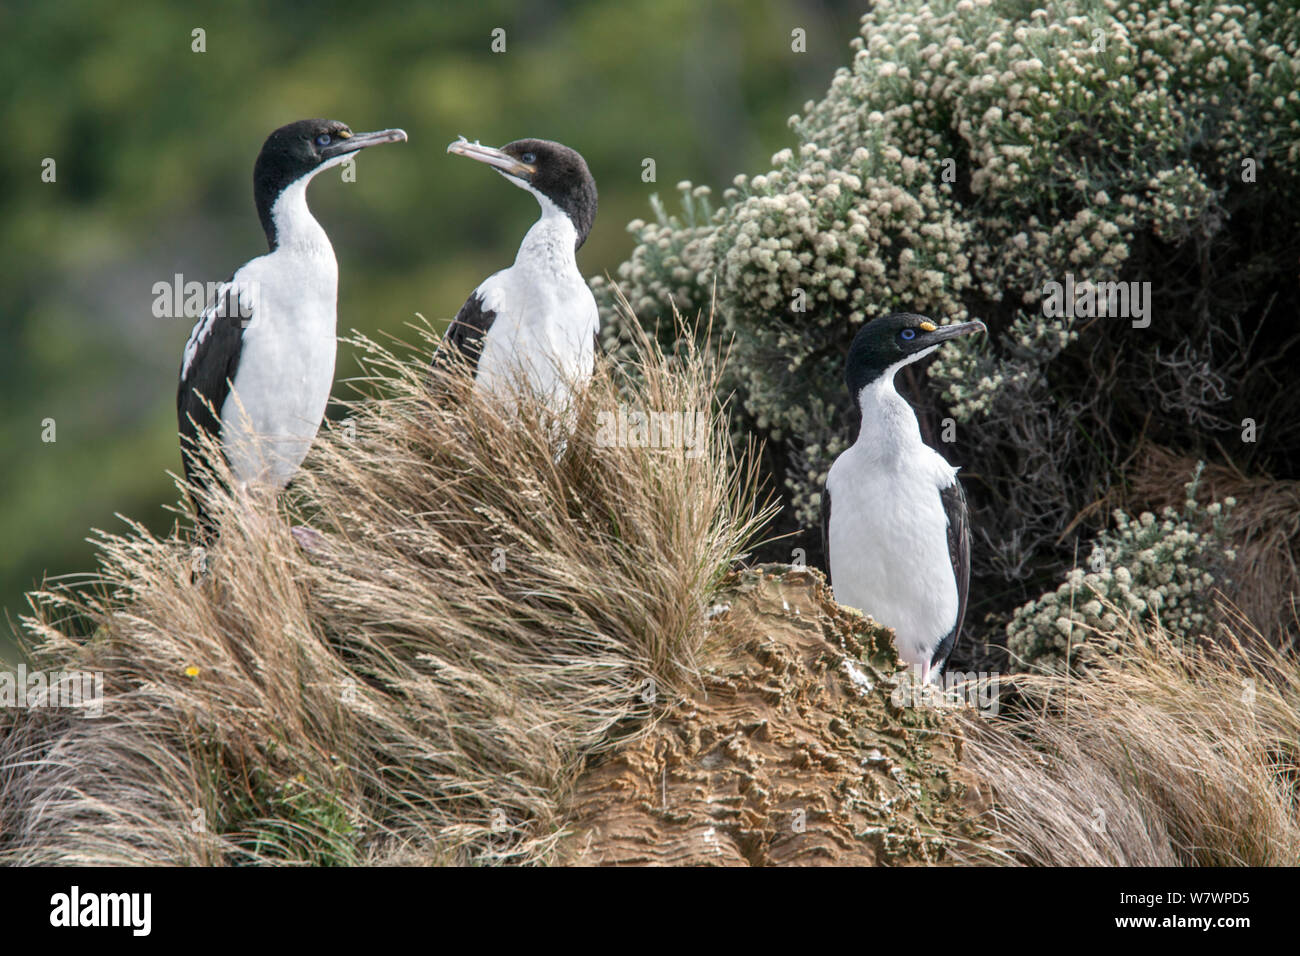 Zwei nach Neuseeland König krähenscharben (Leucocarbo carunculatus) (links und rechts) mit einem kürzlich Flügge unreif. Queen Charlotte Sound, Marlborough Sounds, Neuseeland, Februar. Gefährdete Arten. Stockfoto